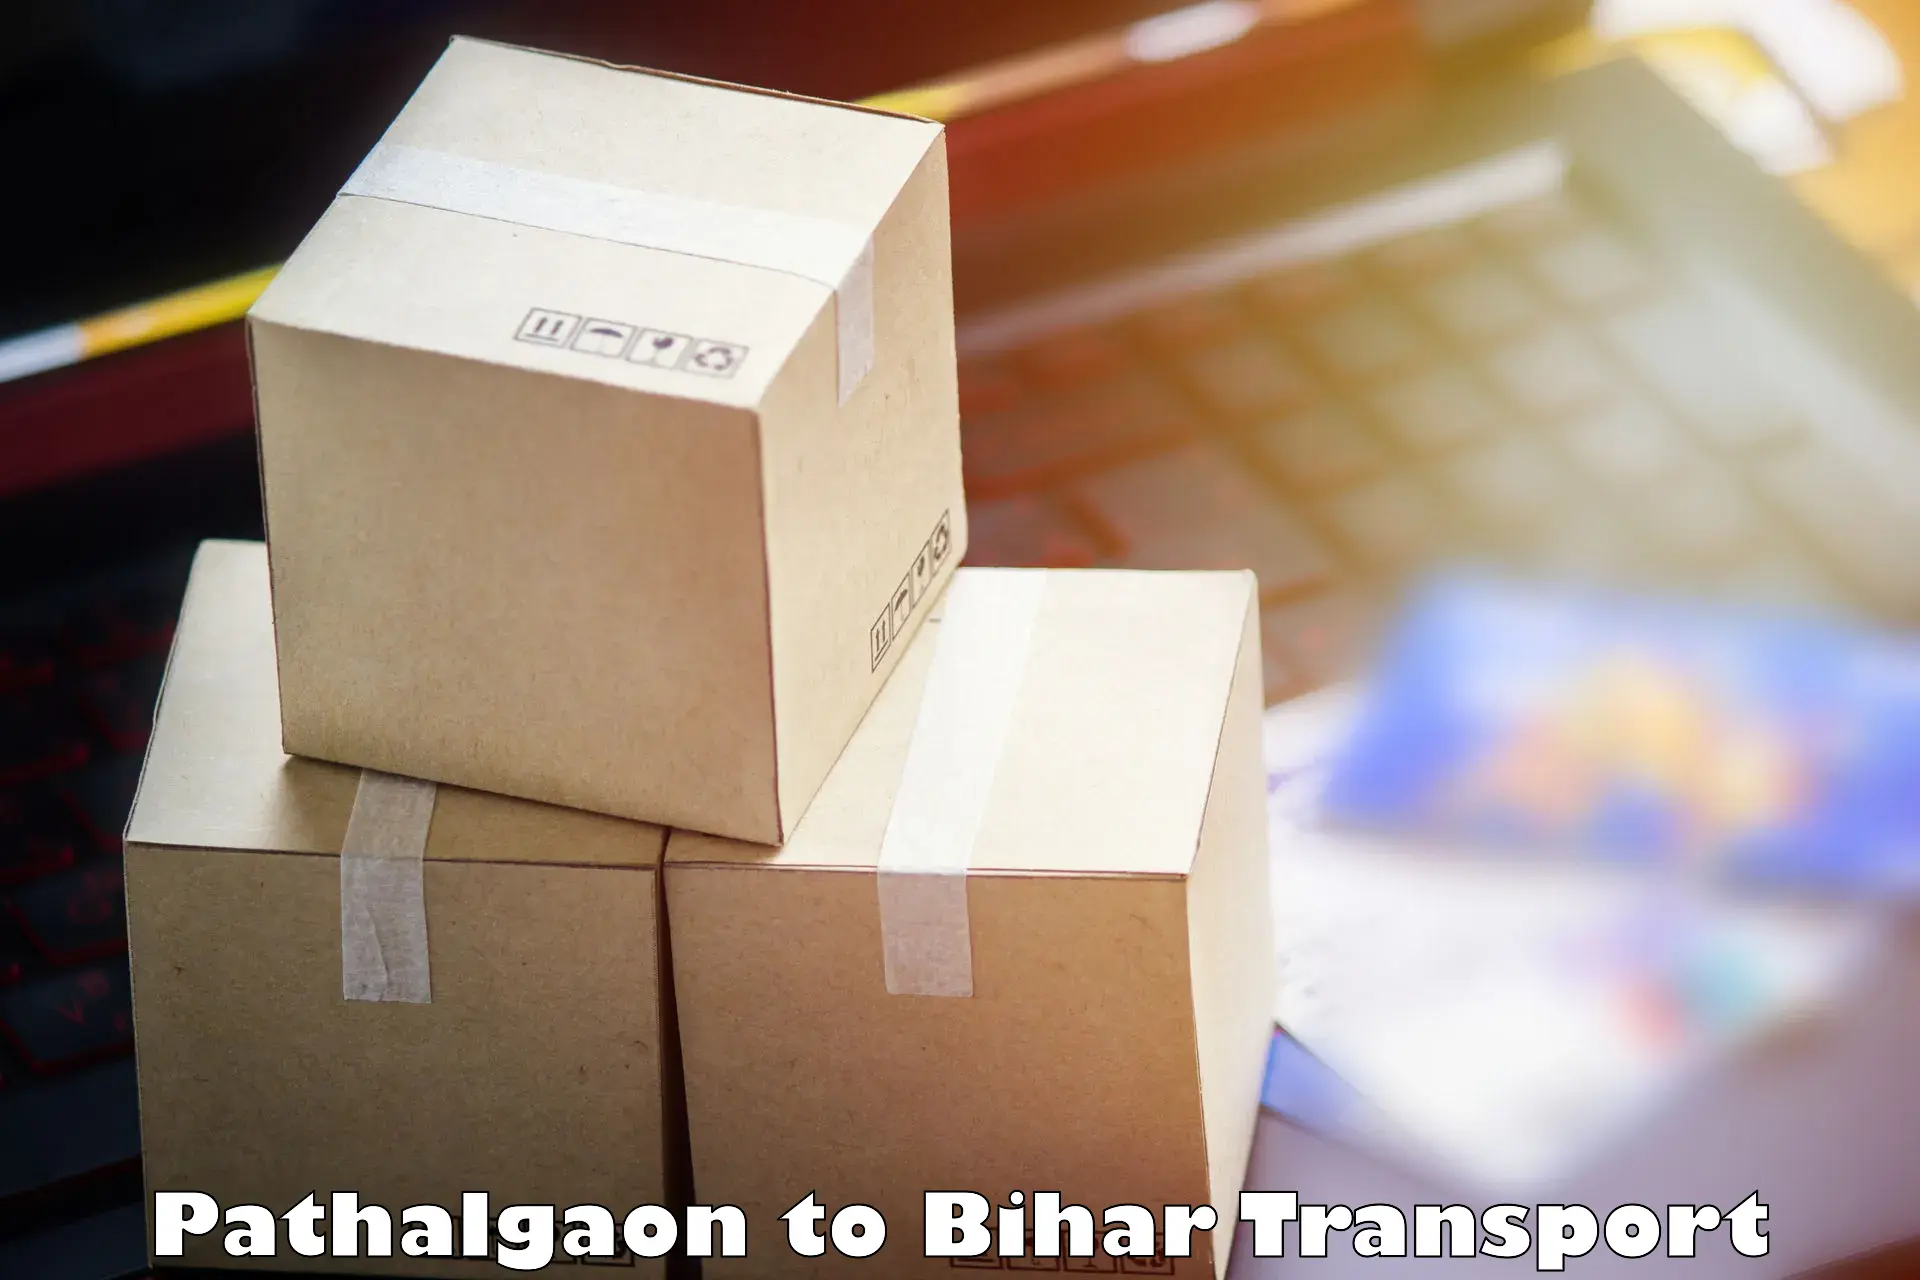 Furniture transport service Pathalgaon to Kudra